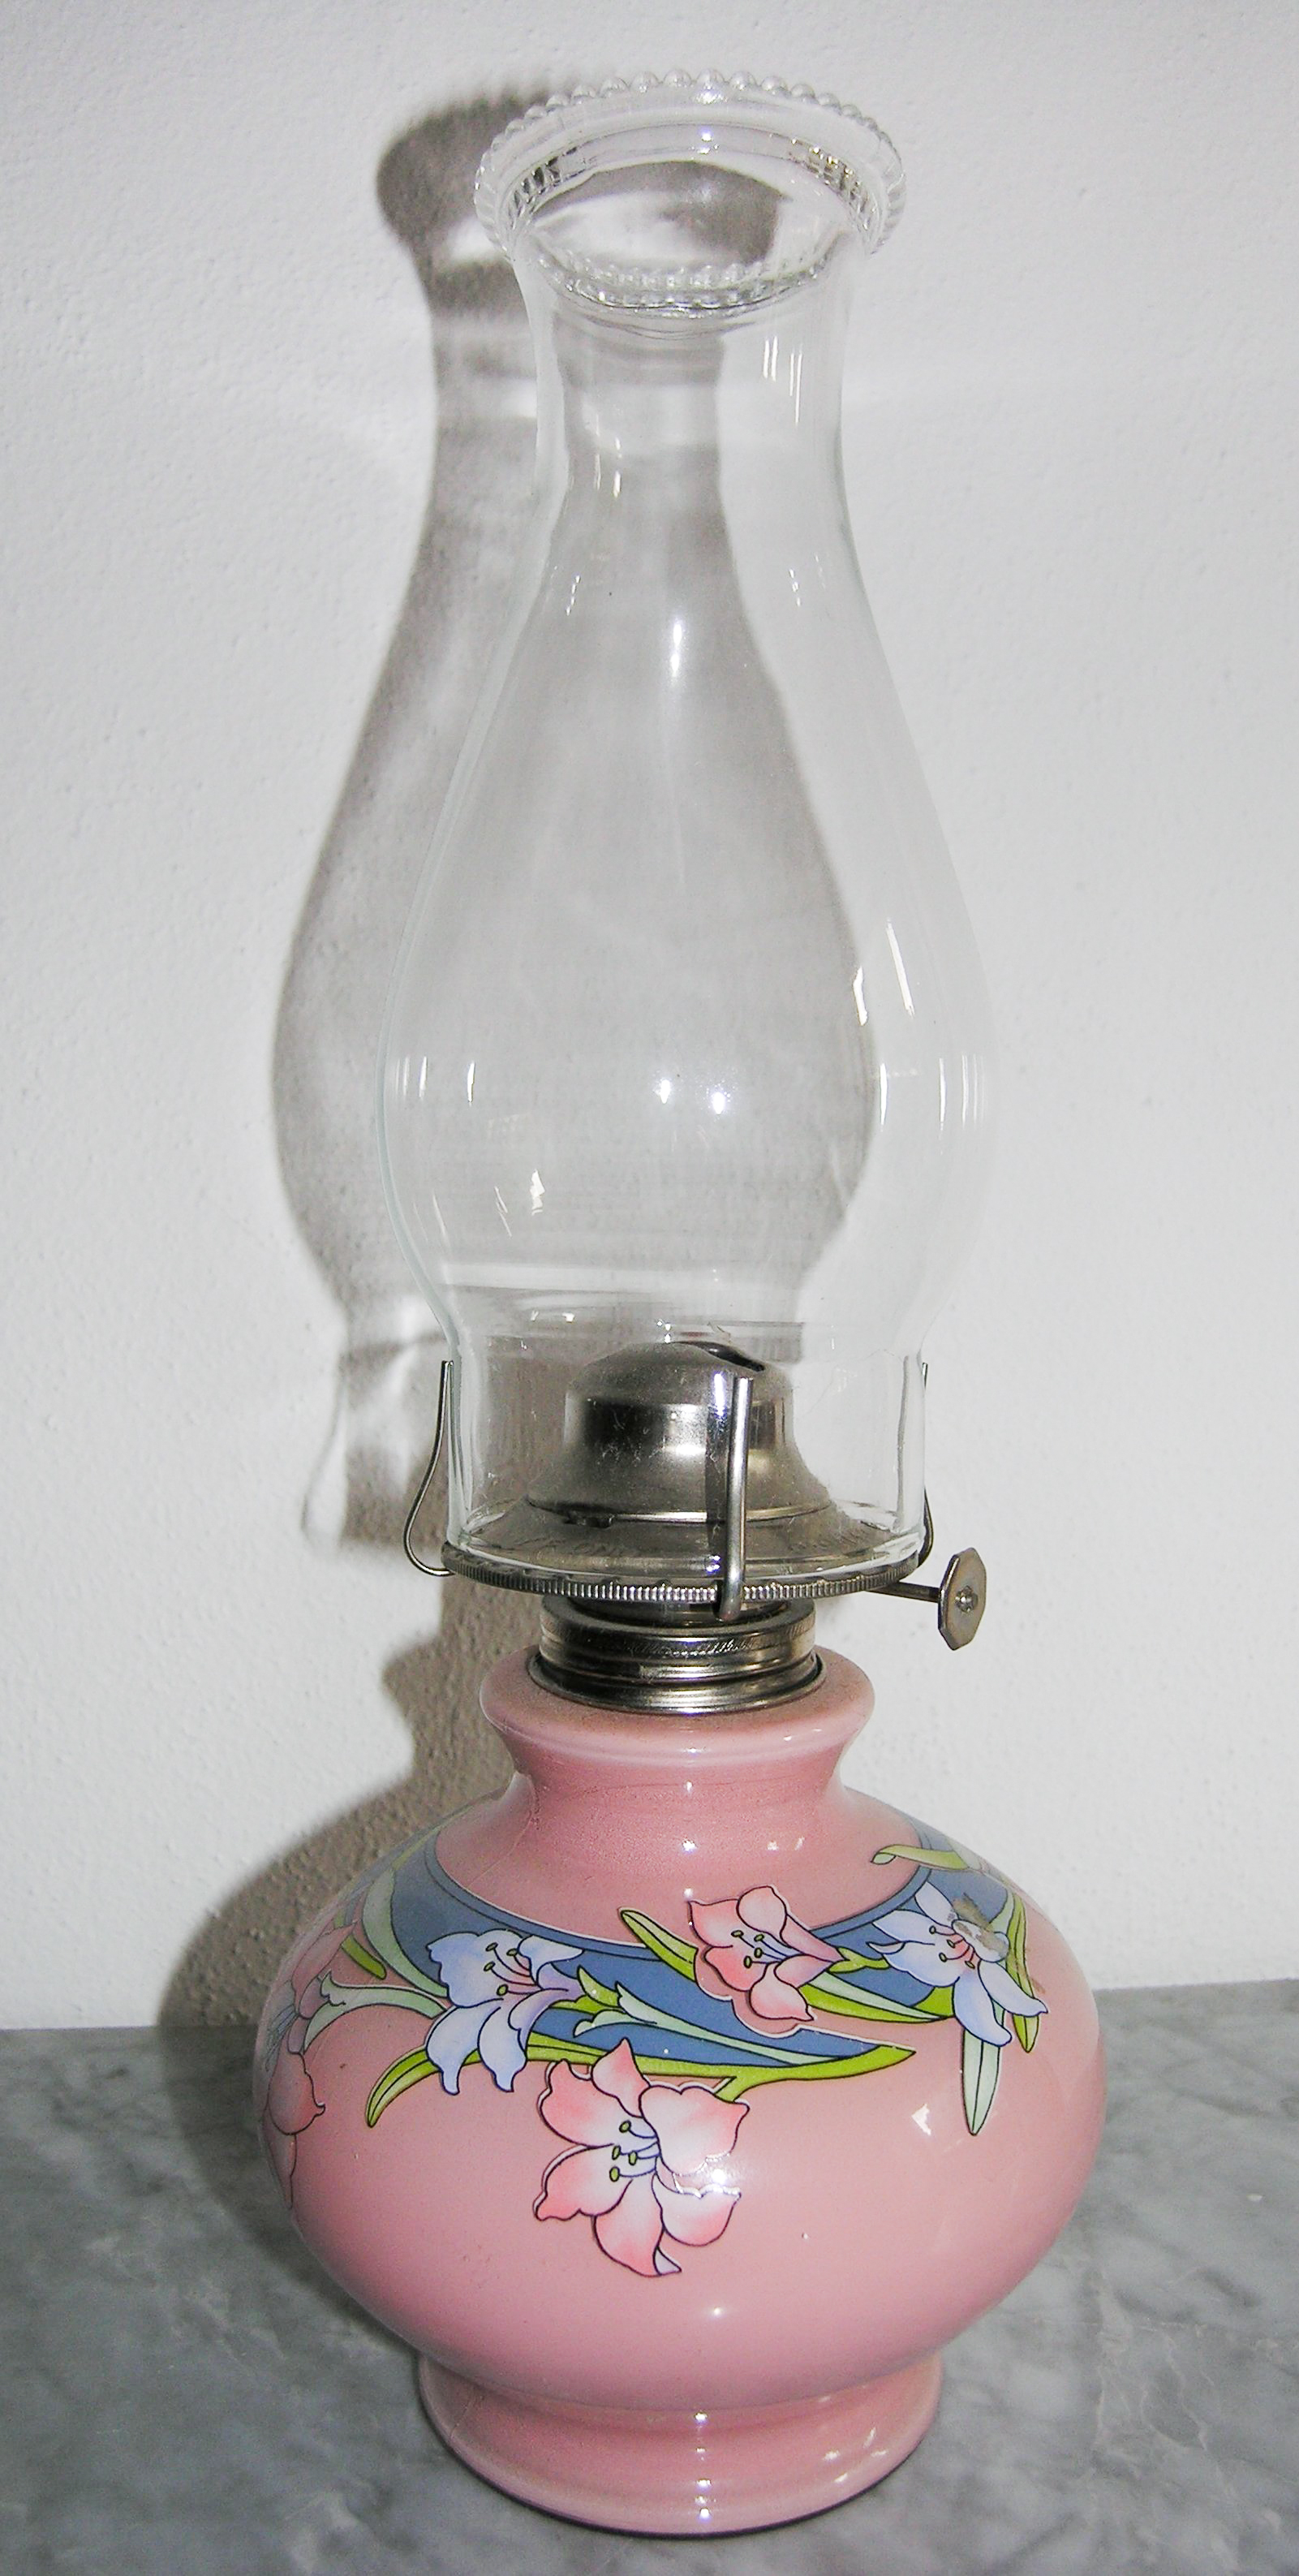 Sommerhus Snazzy smog Kerosene lamp - Wikipedia